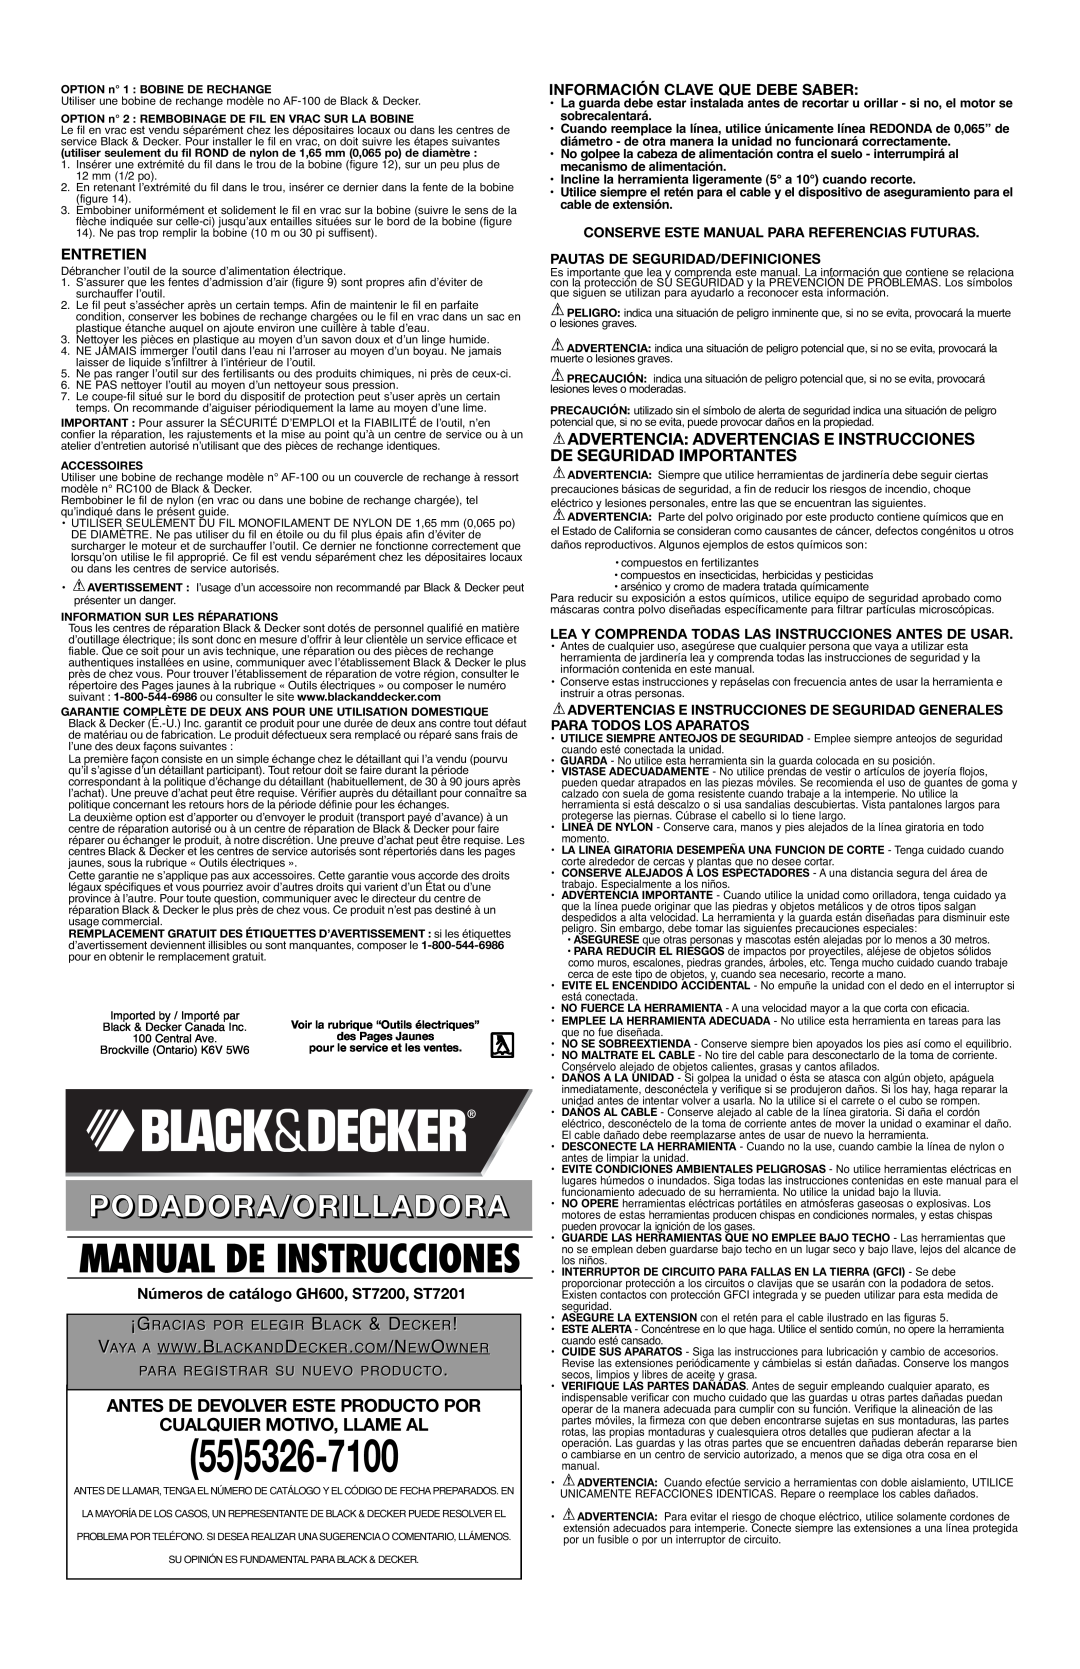 Black & Decker ST7201, ST7200 555326-7100, Antes De Devolver Este Producto Por, Cualquier Motivo, Llame Al, Entretien 